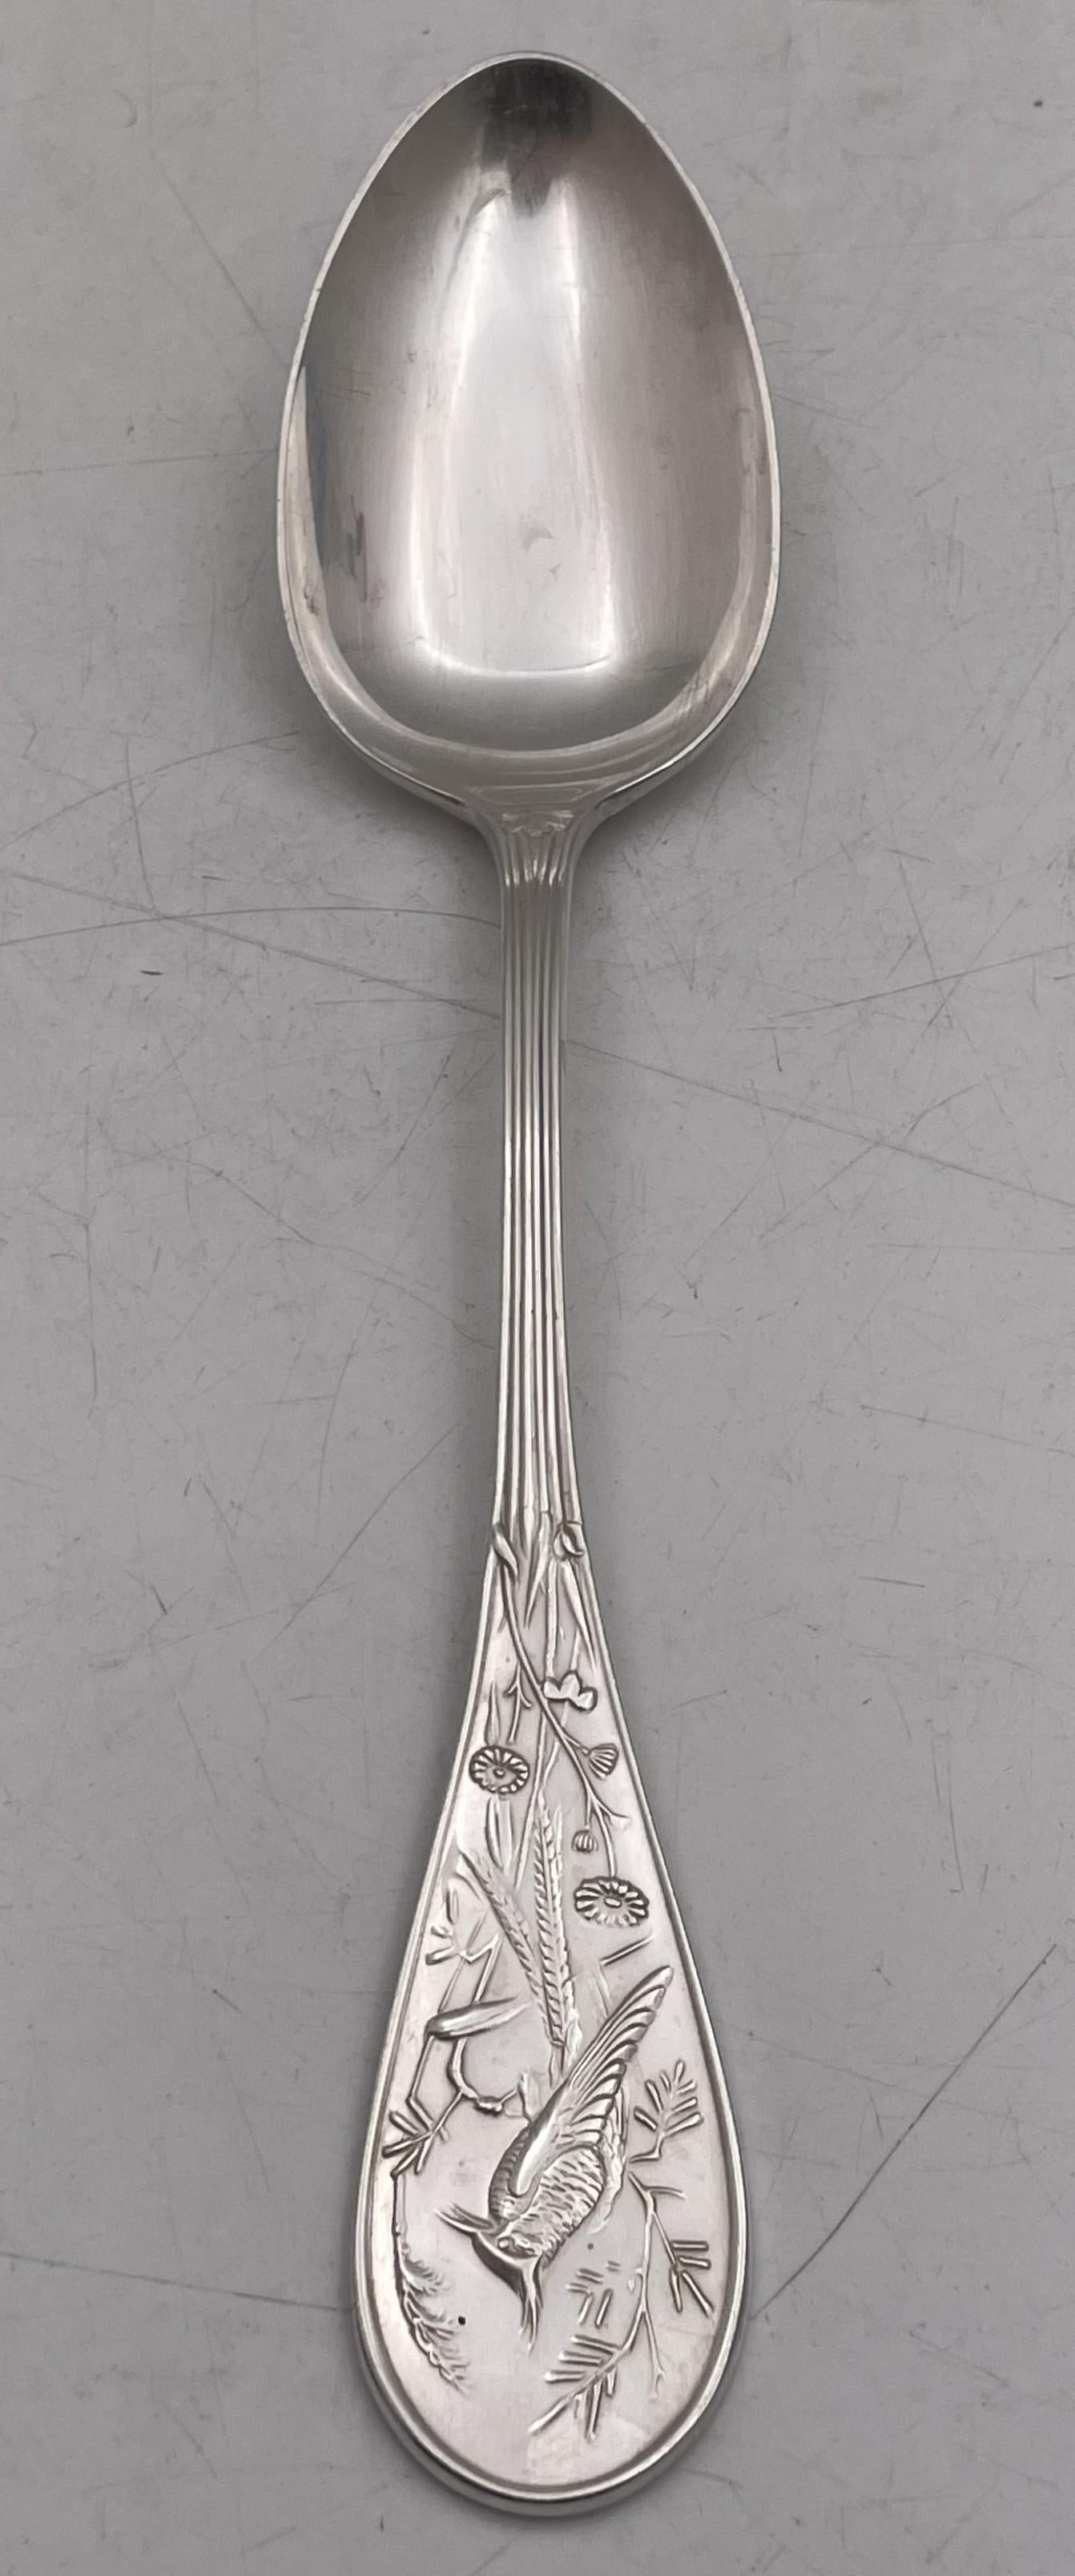 Tiffany & Co. Sterling Silber Esslöffel in der berühmten Audubon Muster, schön mit einem Vogel und natürlichen Motiven verziert, Messung 8 1/2 